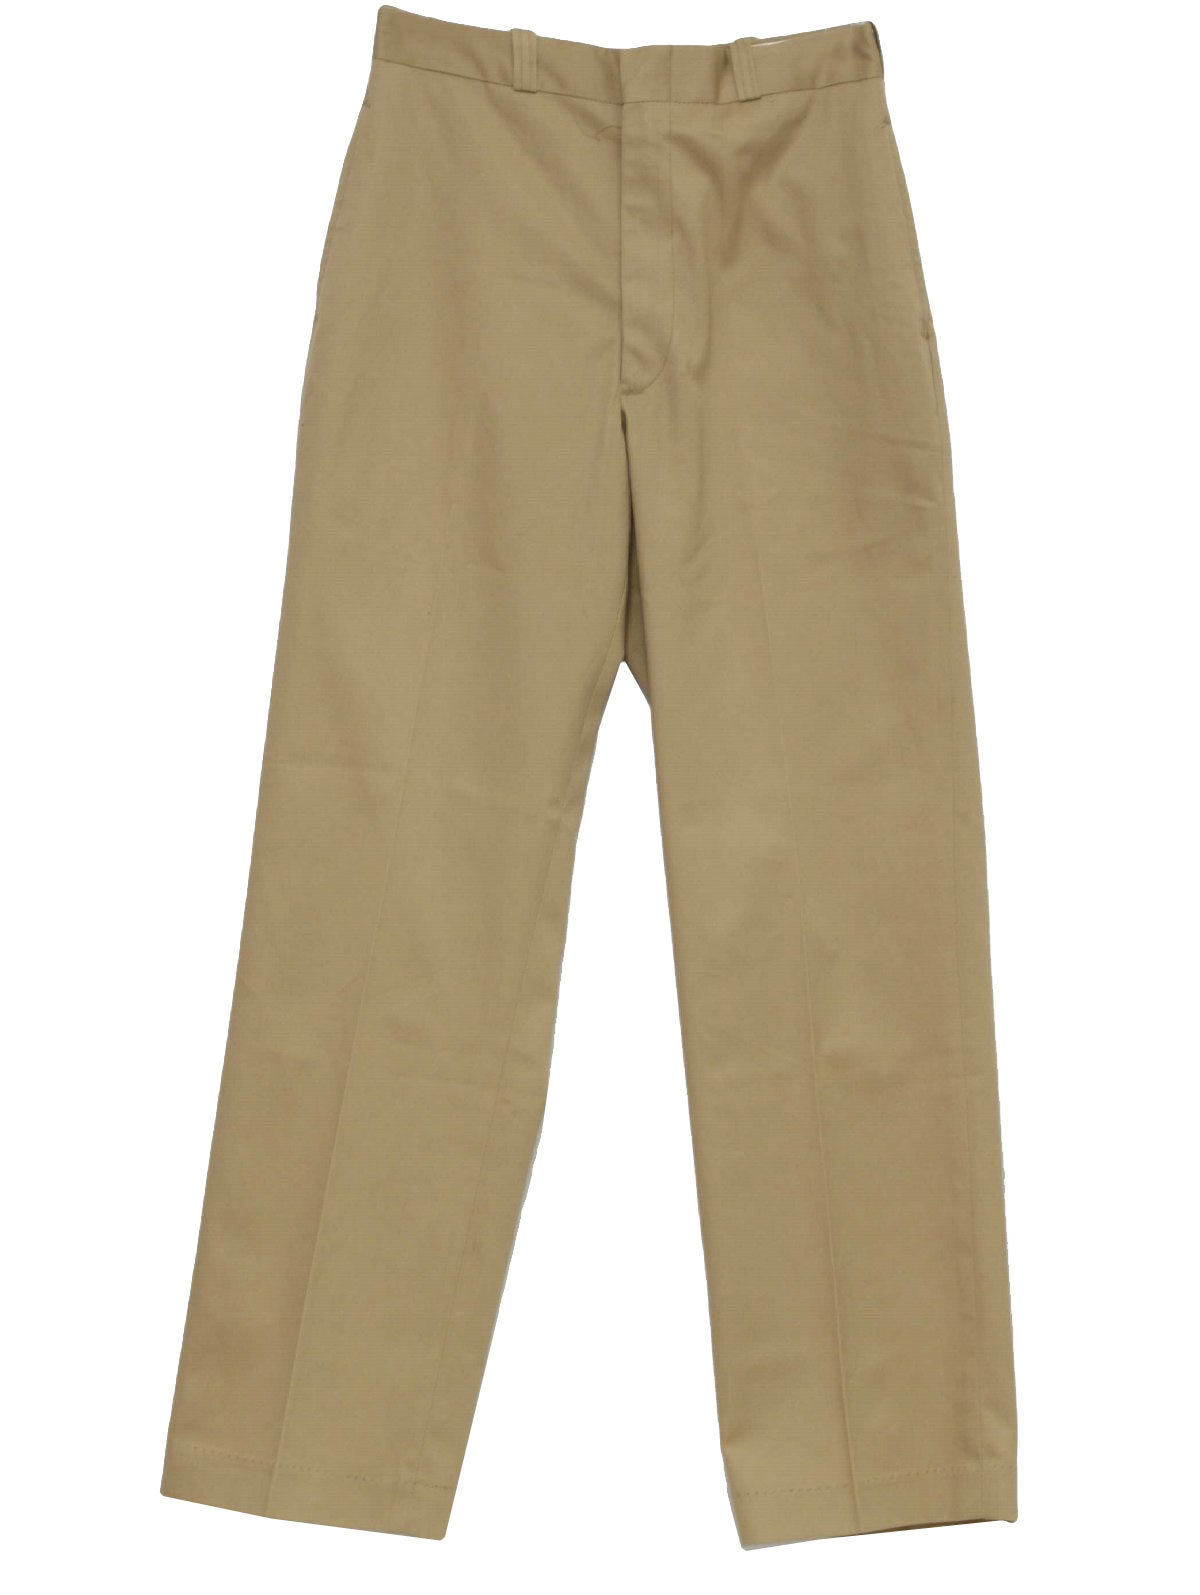 Uniform Khaki Pants 49